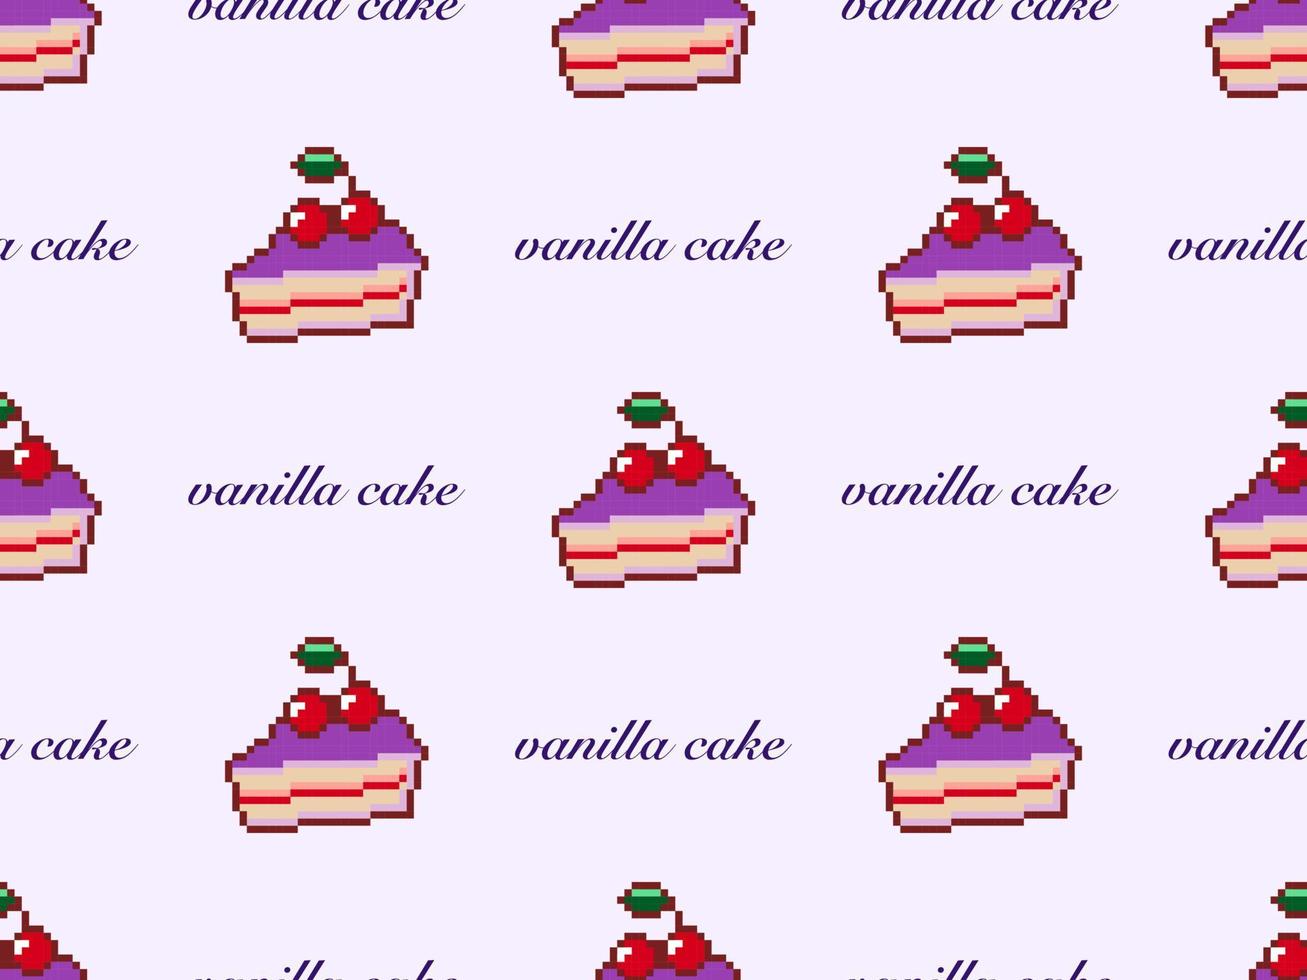 nahtloses muster der kuchenzeichentrickfigur auf purpurrotem hintergrund. pixelart vektor